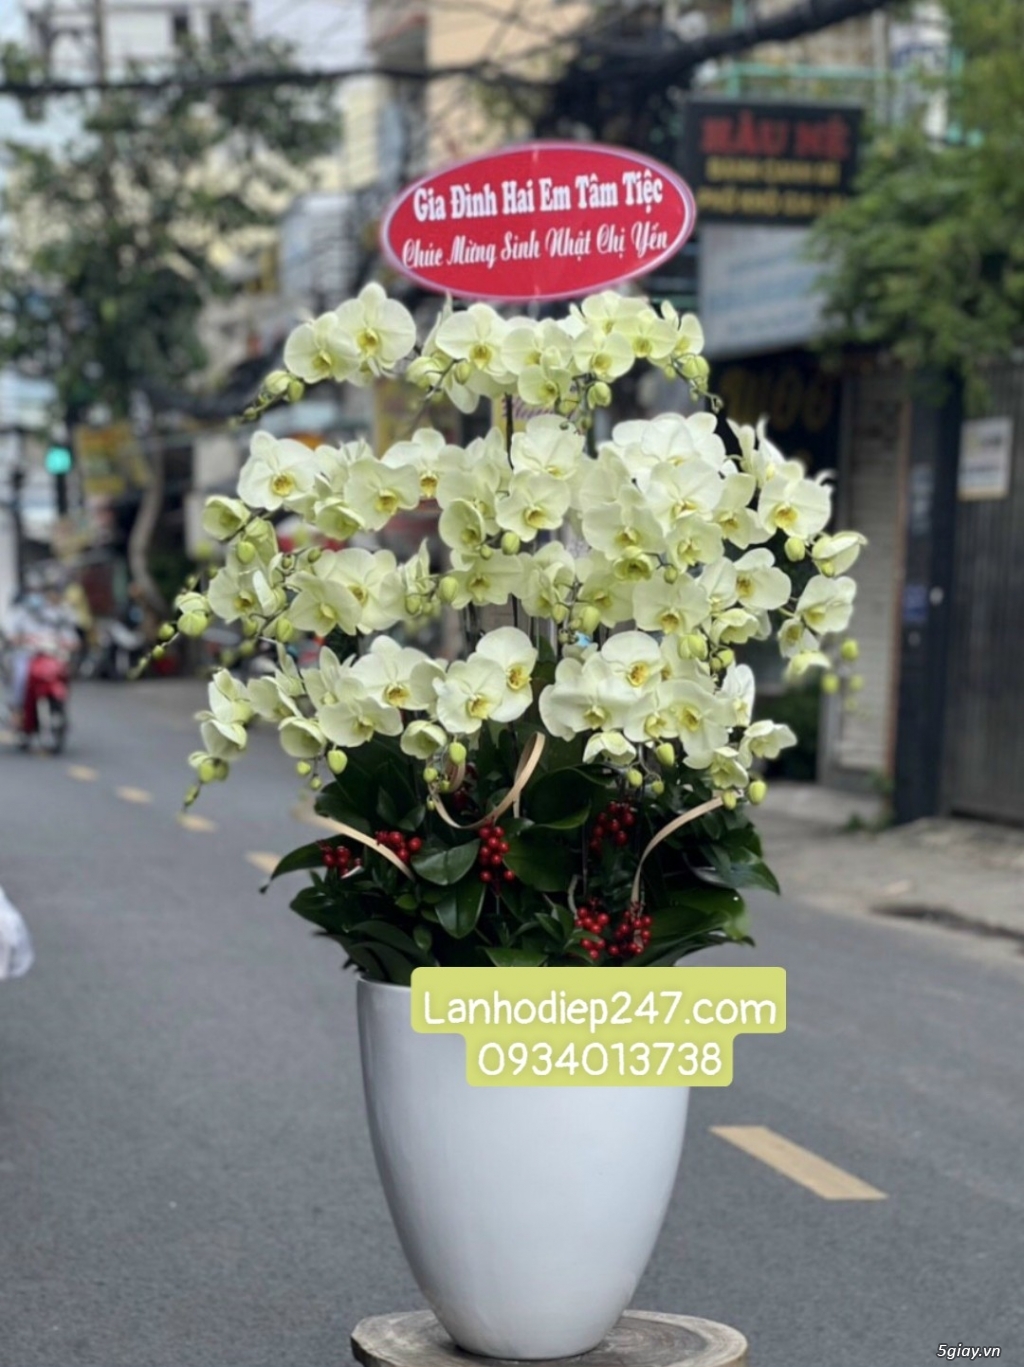 Mua Lan Hồ Điệp cao cấp ở Sài Gòn - Shop hoa tươi 247 uy tín HÀNG ĐẦU